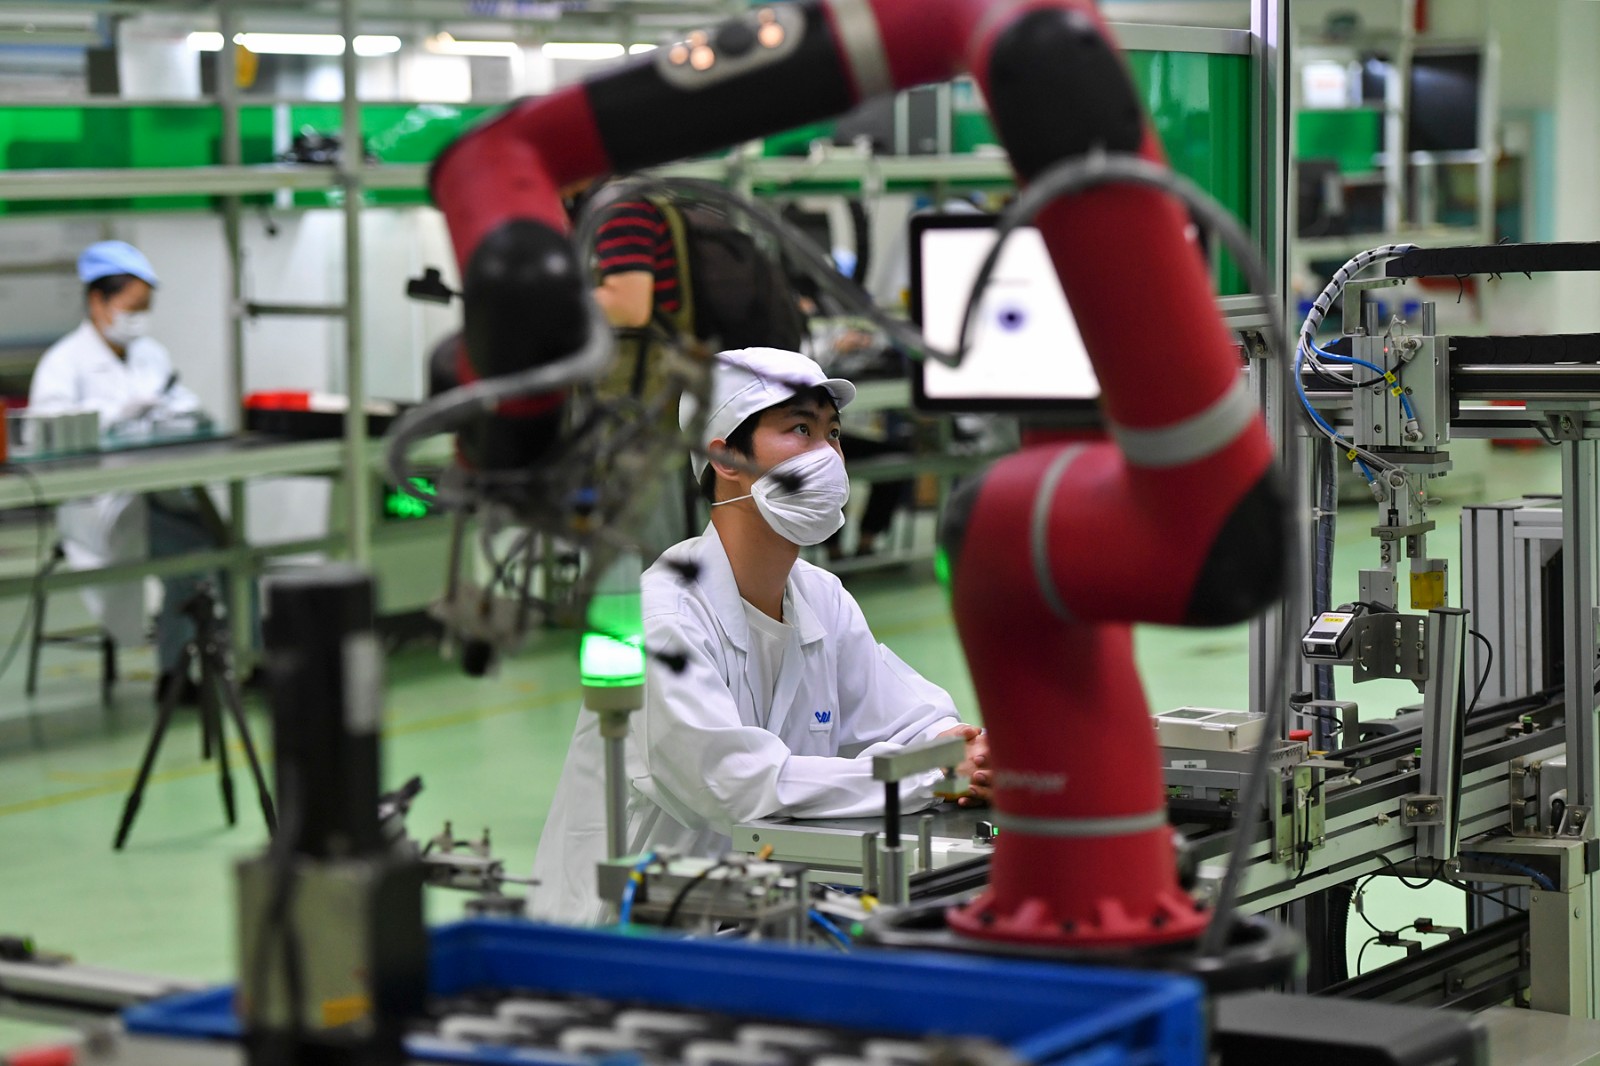 威胜集团生产车间引入智能化生产线与智能协作机器人，生产效率得以大幅提升。 长沙晚报全媒体记者 王志伟 摄